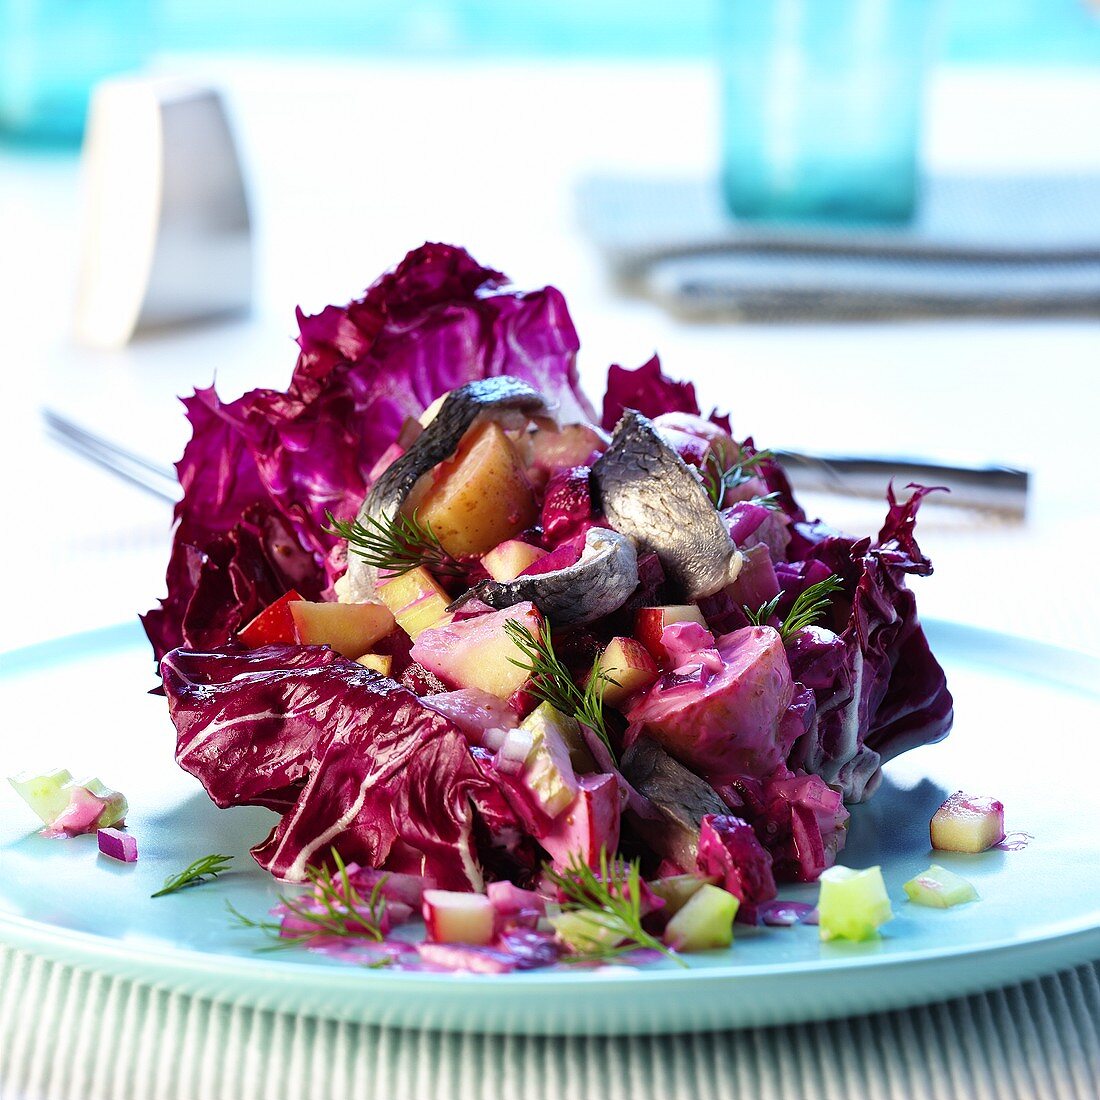 Herring salad on radicchio